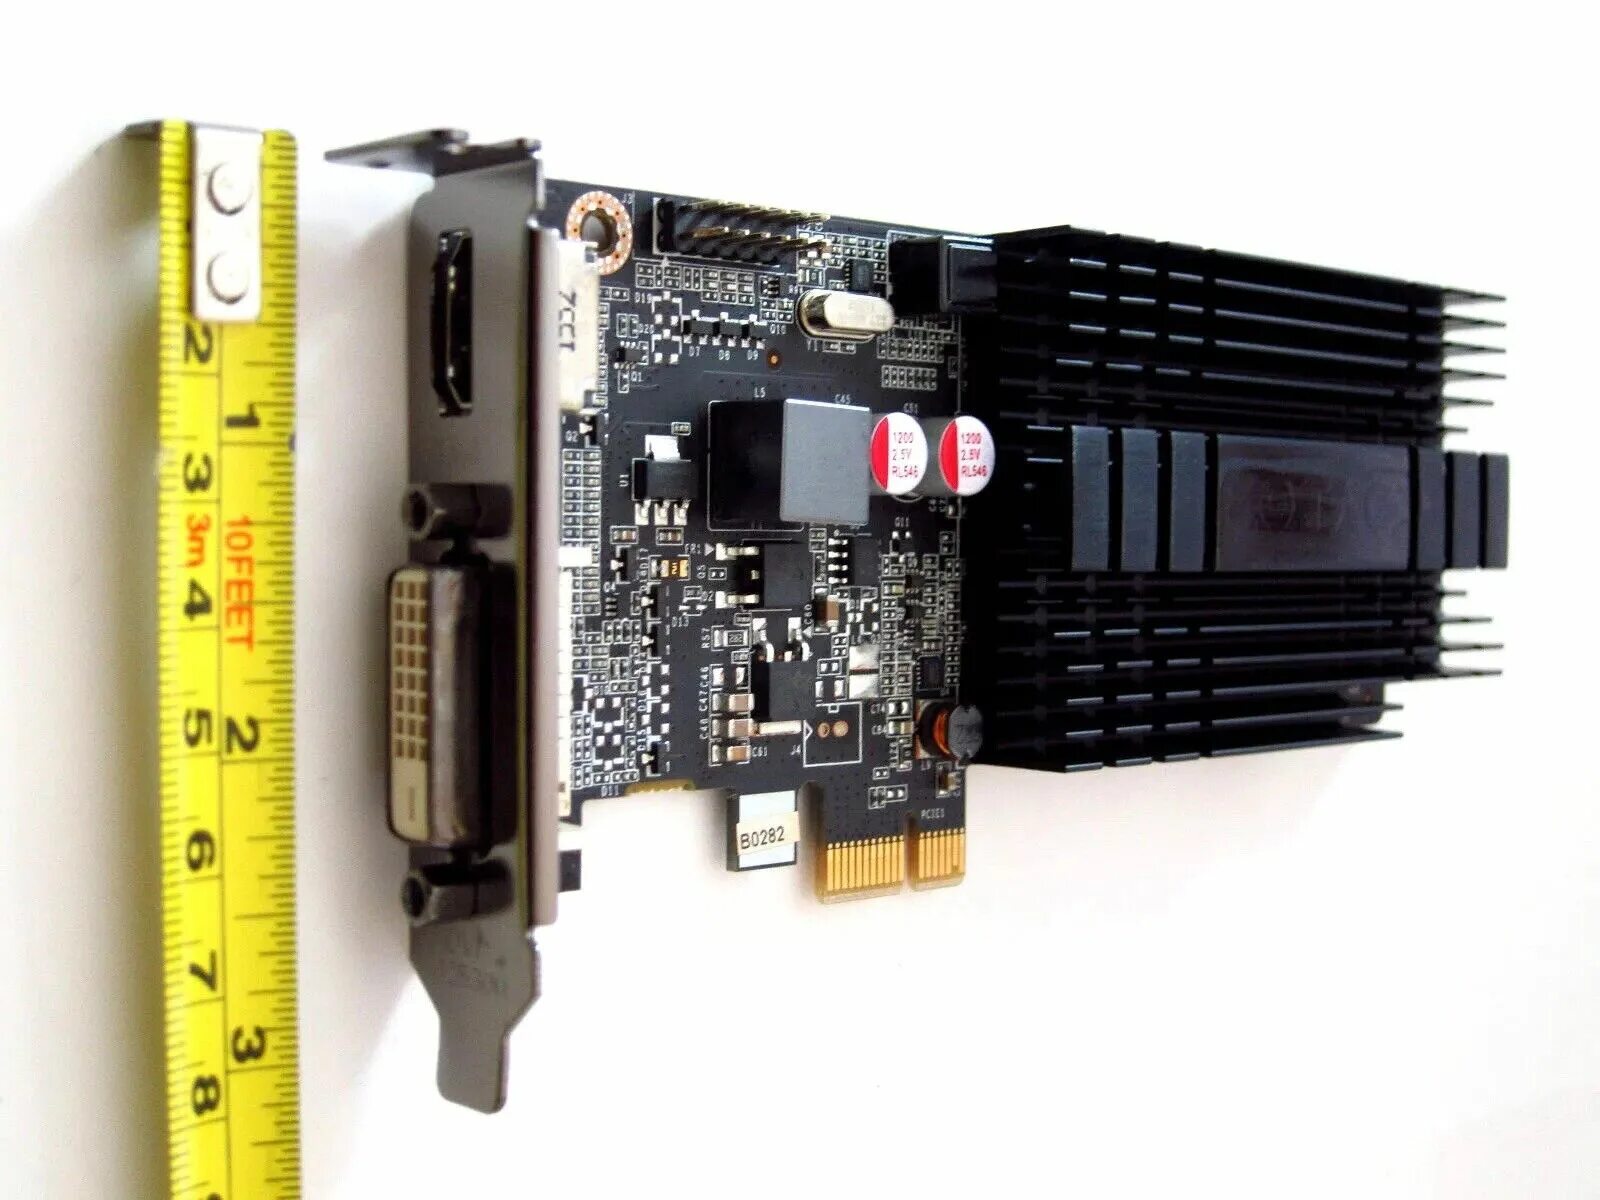 Видеокарта PCI-E x1. PCI Express x1 видеокарта. Слоты PCIE x1. Видеокарта PCI x1.